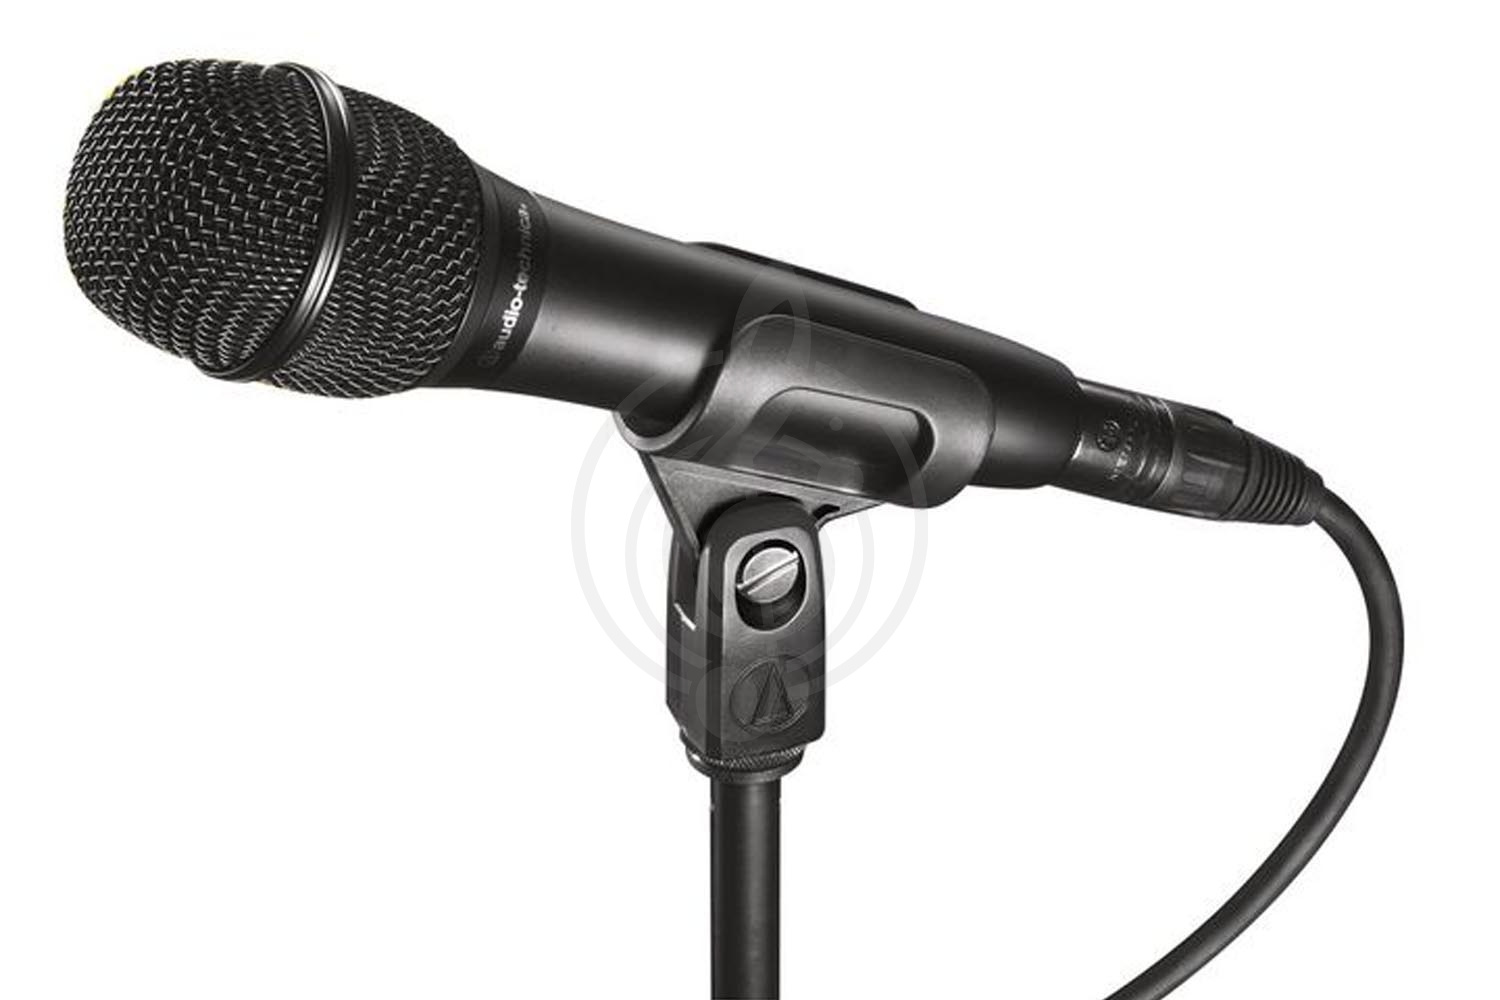 Конденсаторный вокальный микрофон Конденсаторные вокальные микрофоны AUDIO-TECHNICA Audio-Technica AT2010 - конденсаторный вокальный микрофон AT2010 - фото 1